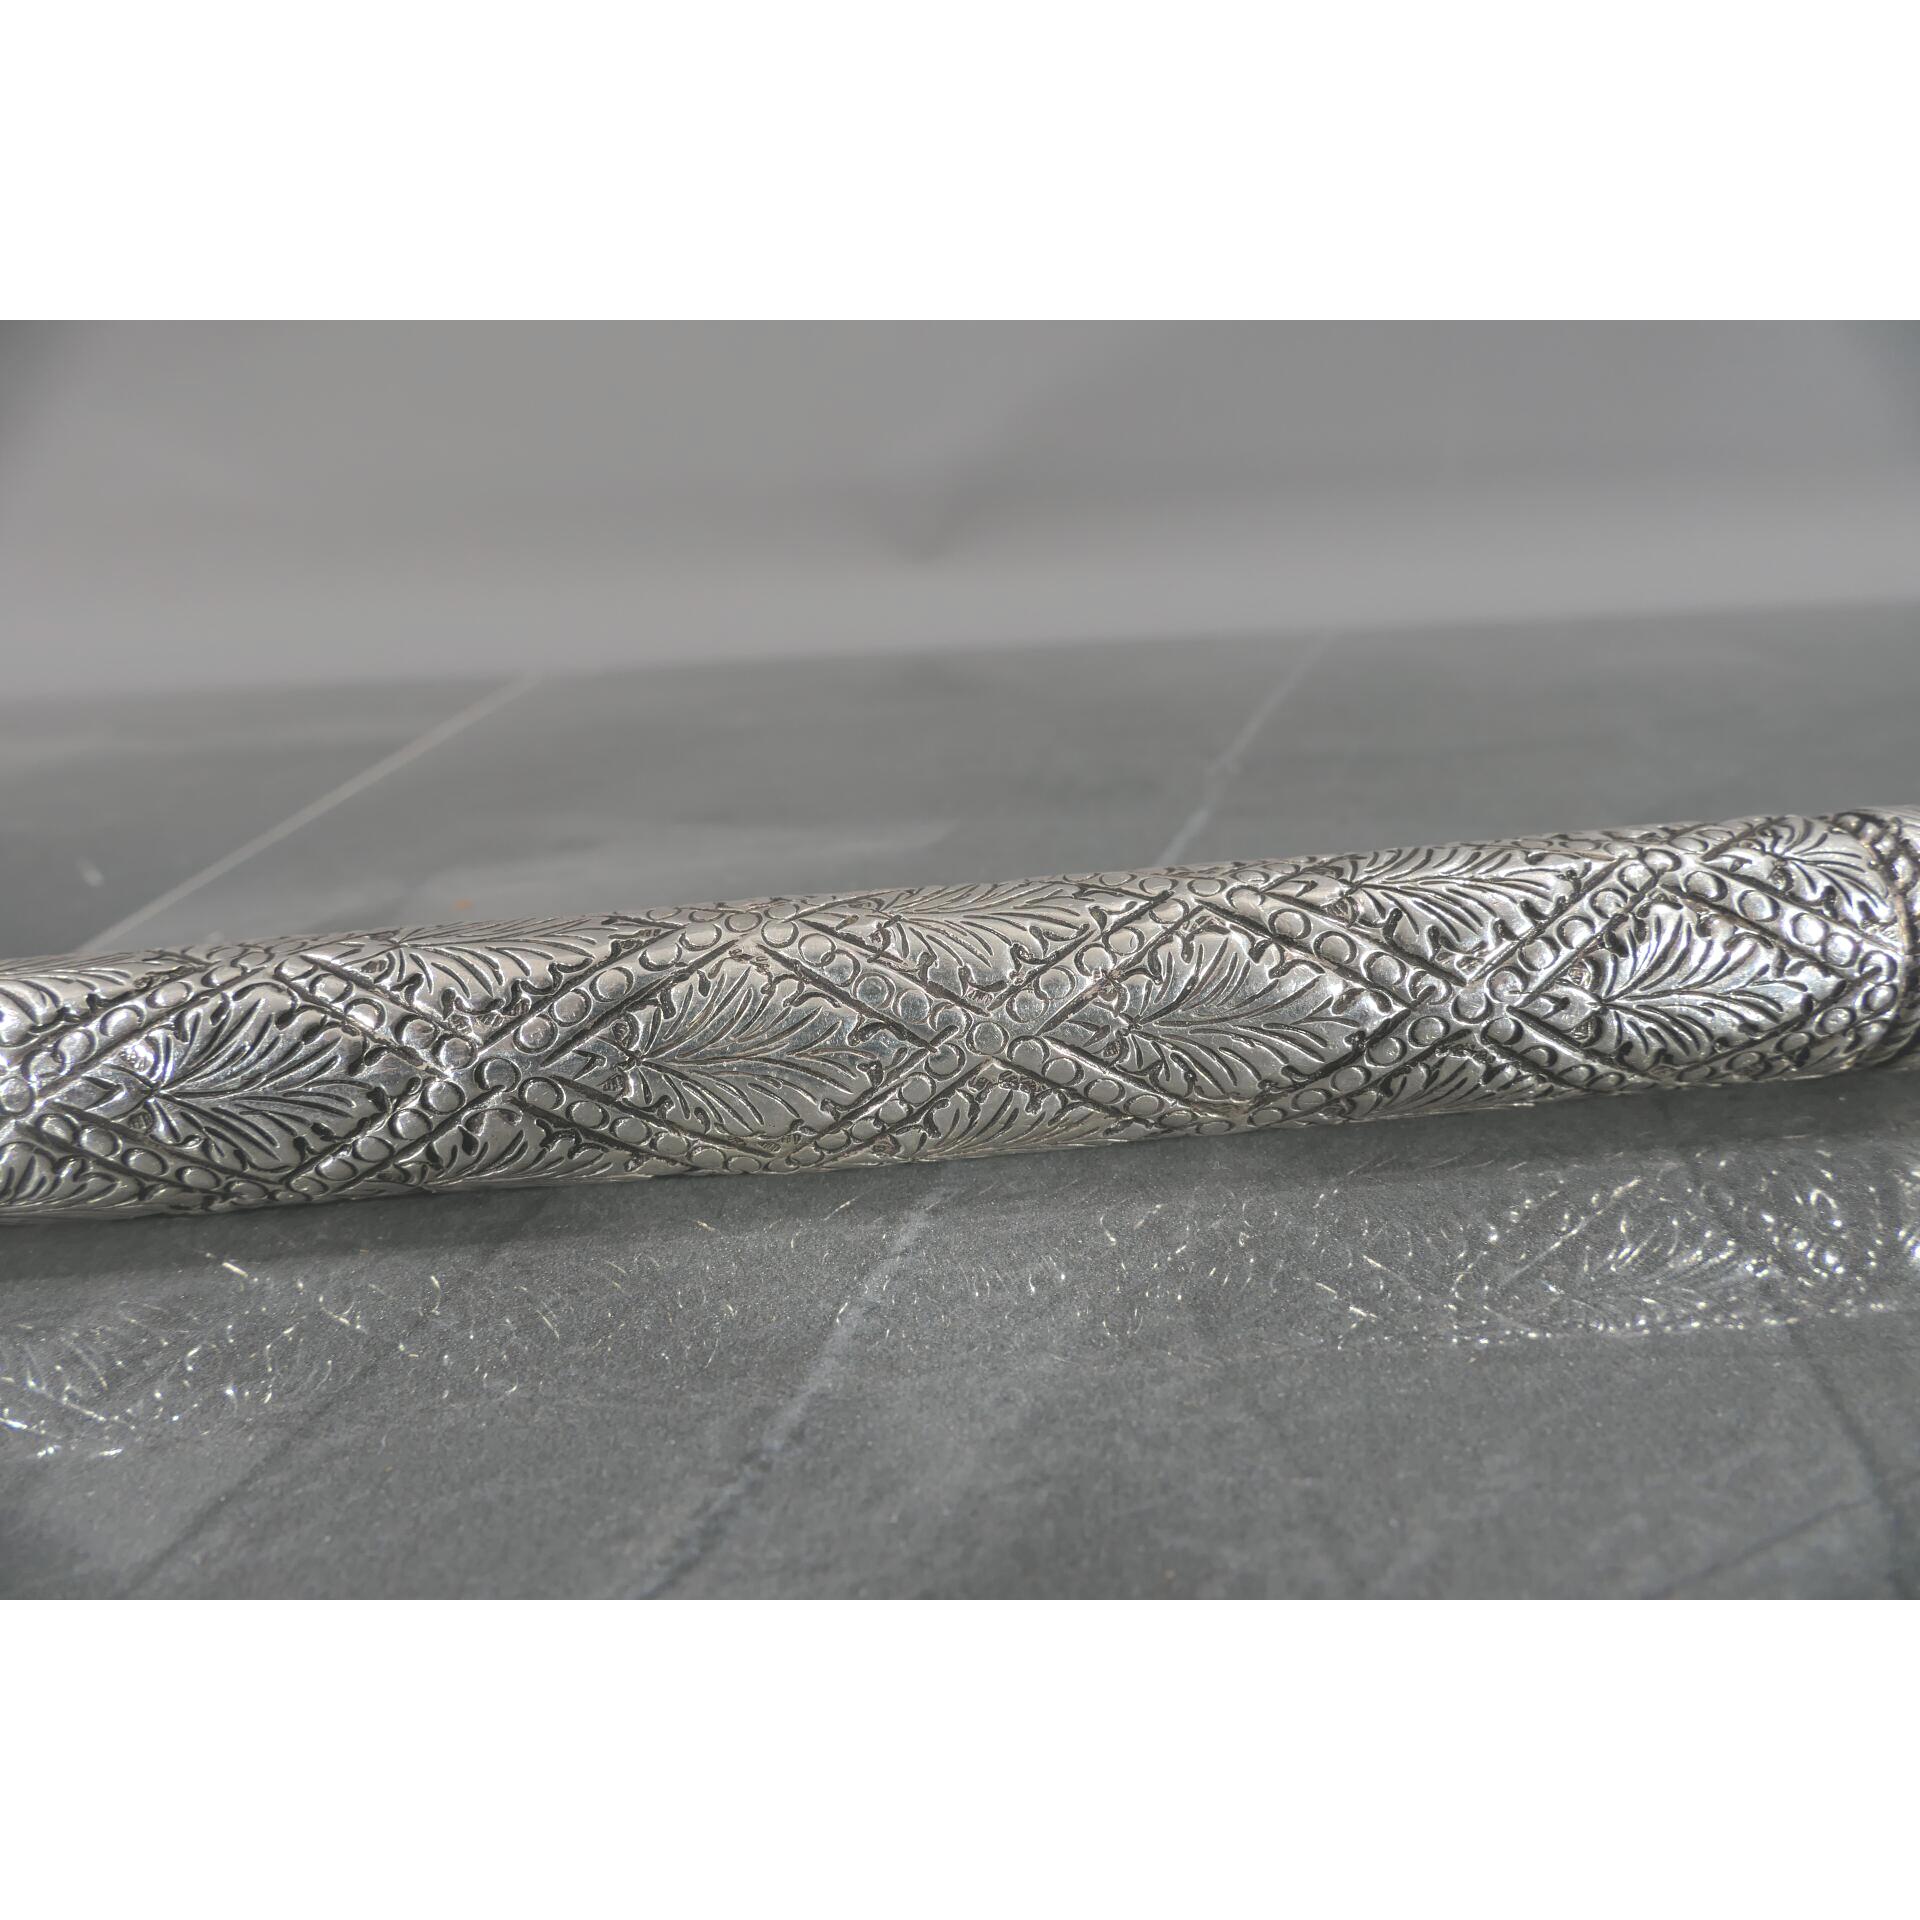 Gehstock mit Entengriffstück, 800er Silber tlw. von Hand gravierter, hohlgegossener, verschraubter, - Image 9 of 18